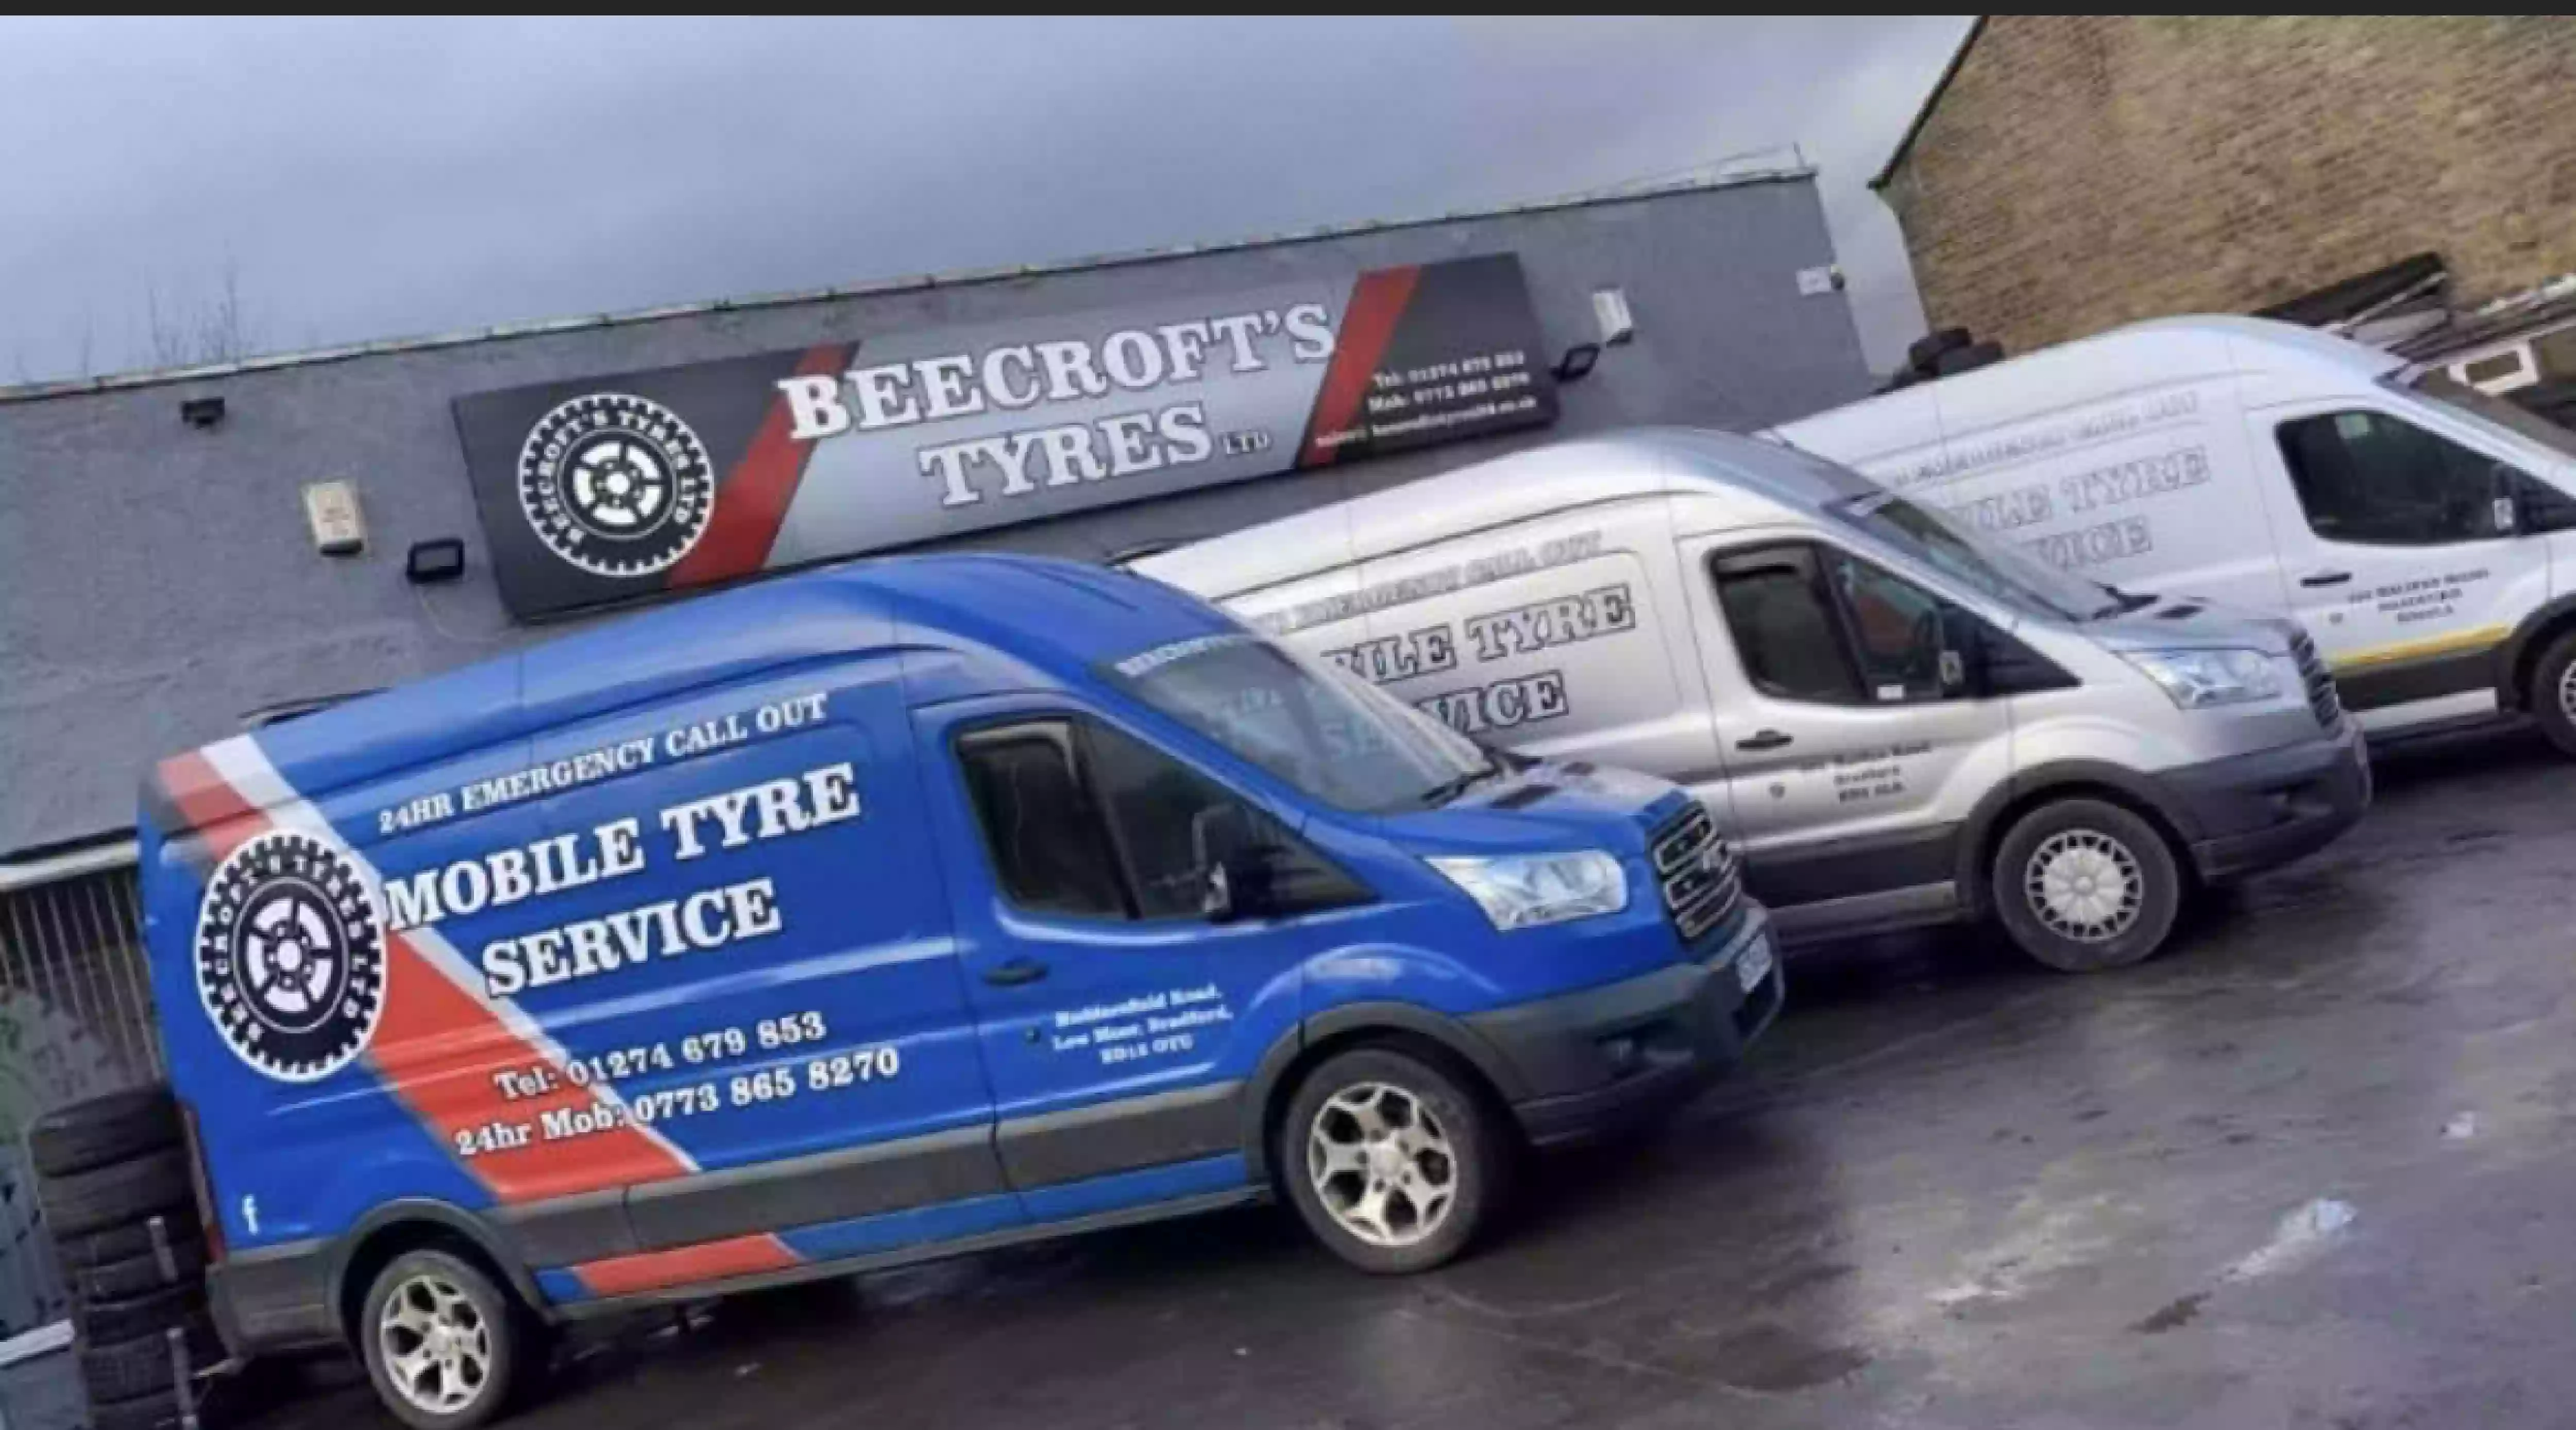 Beecroft Tyres Ltd